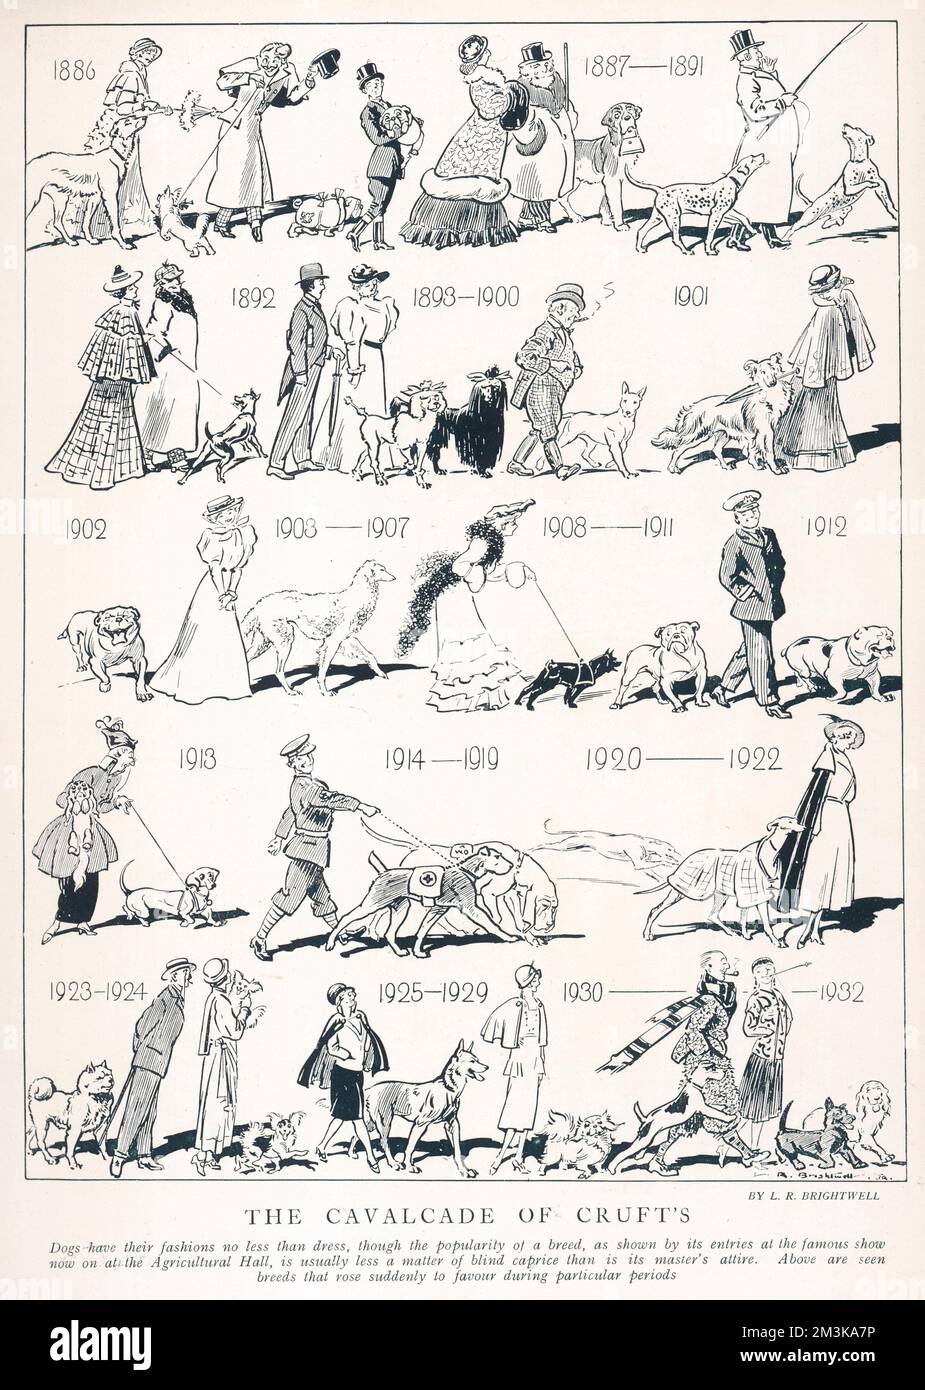 Une image humoristique séquentielle montrant les changements de goûts des races de chiens en Grande-Bretagne à travers les années de la période victorienne à 1932. Date: 1932 Banque D'Images